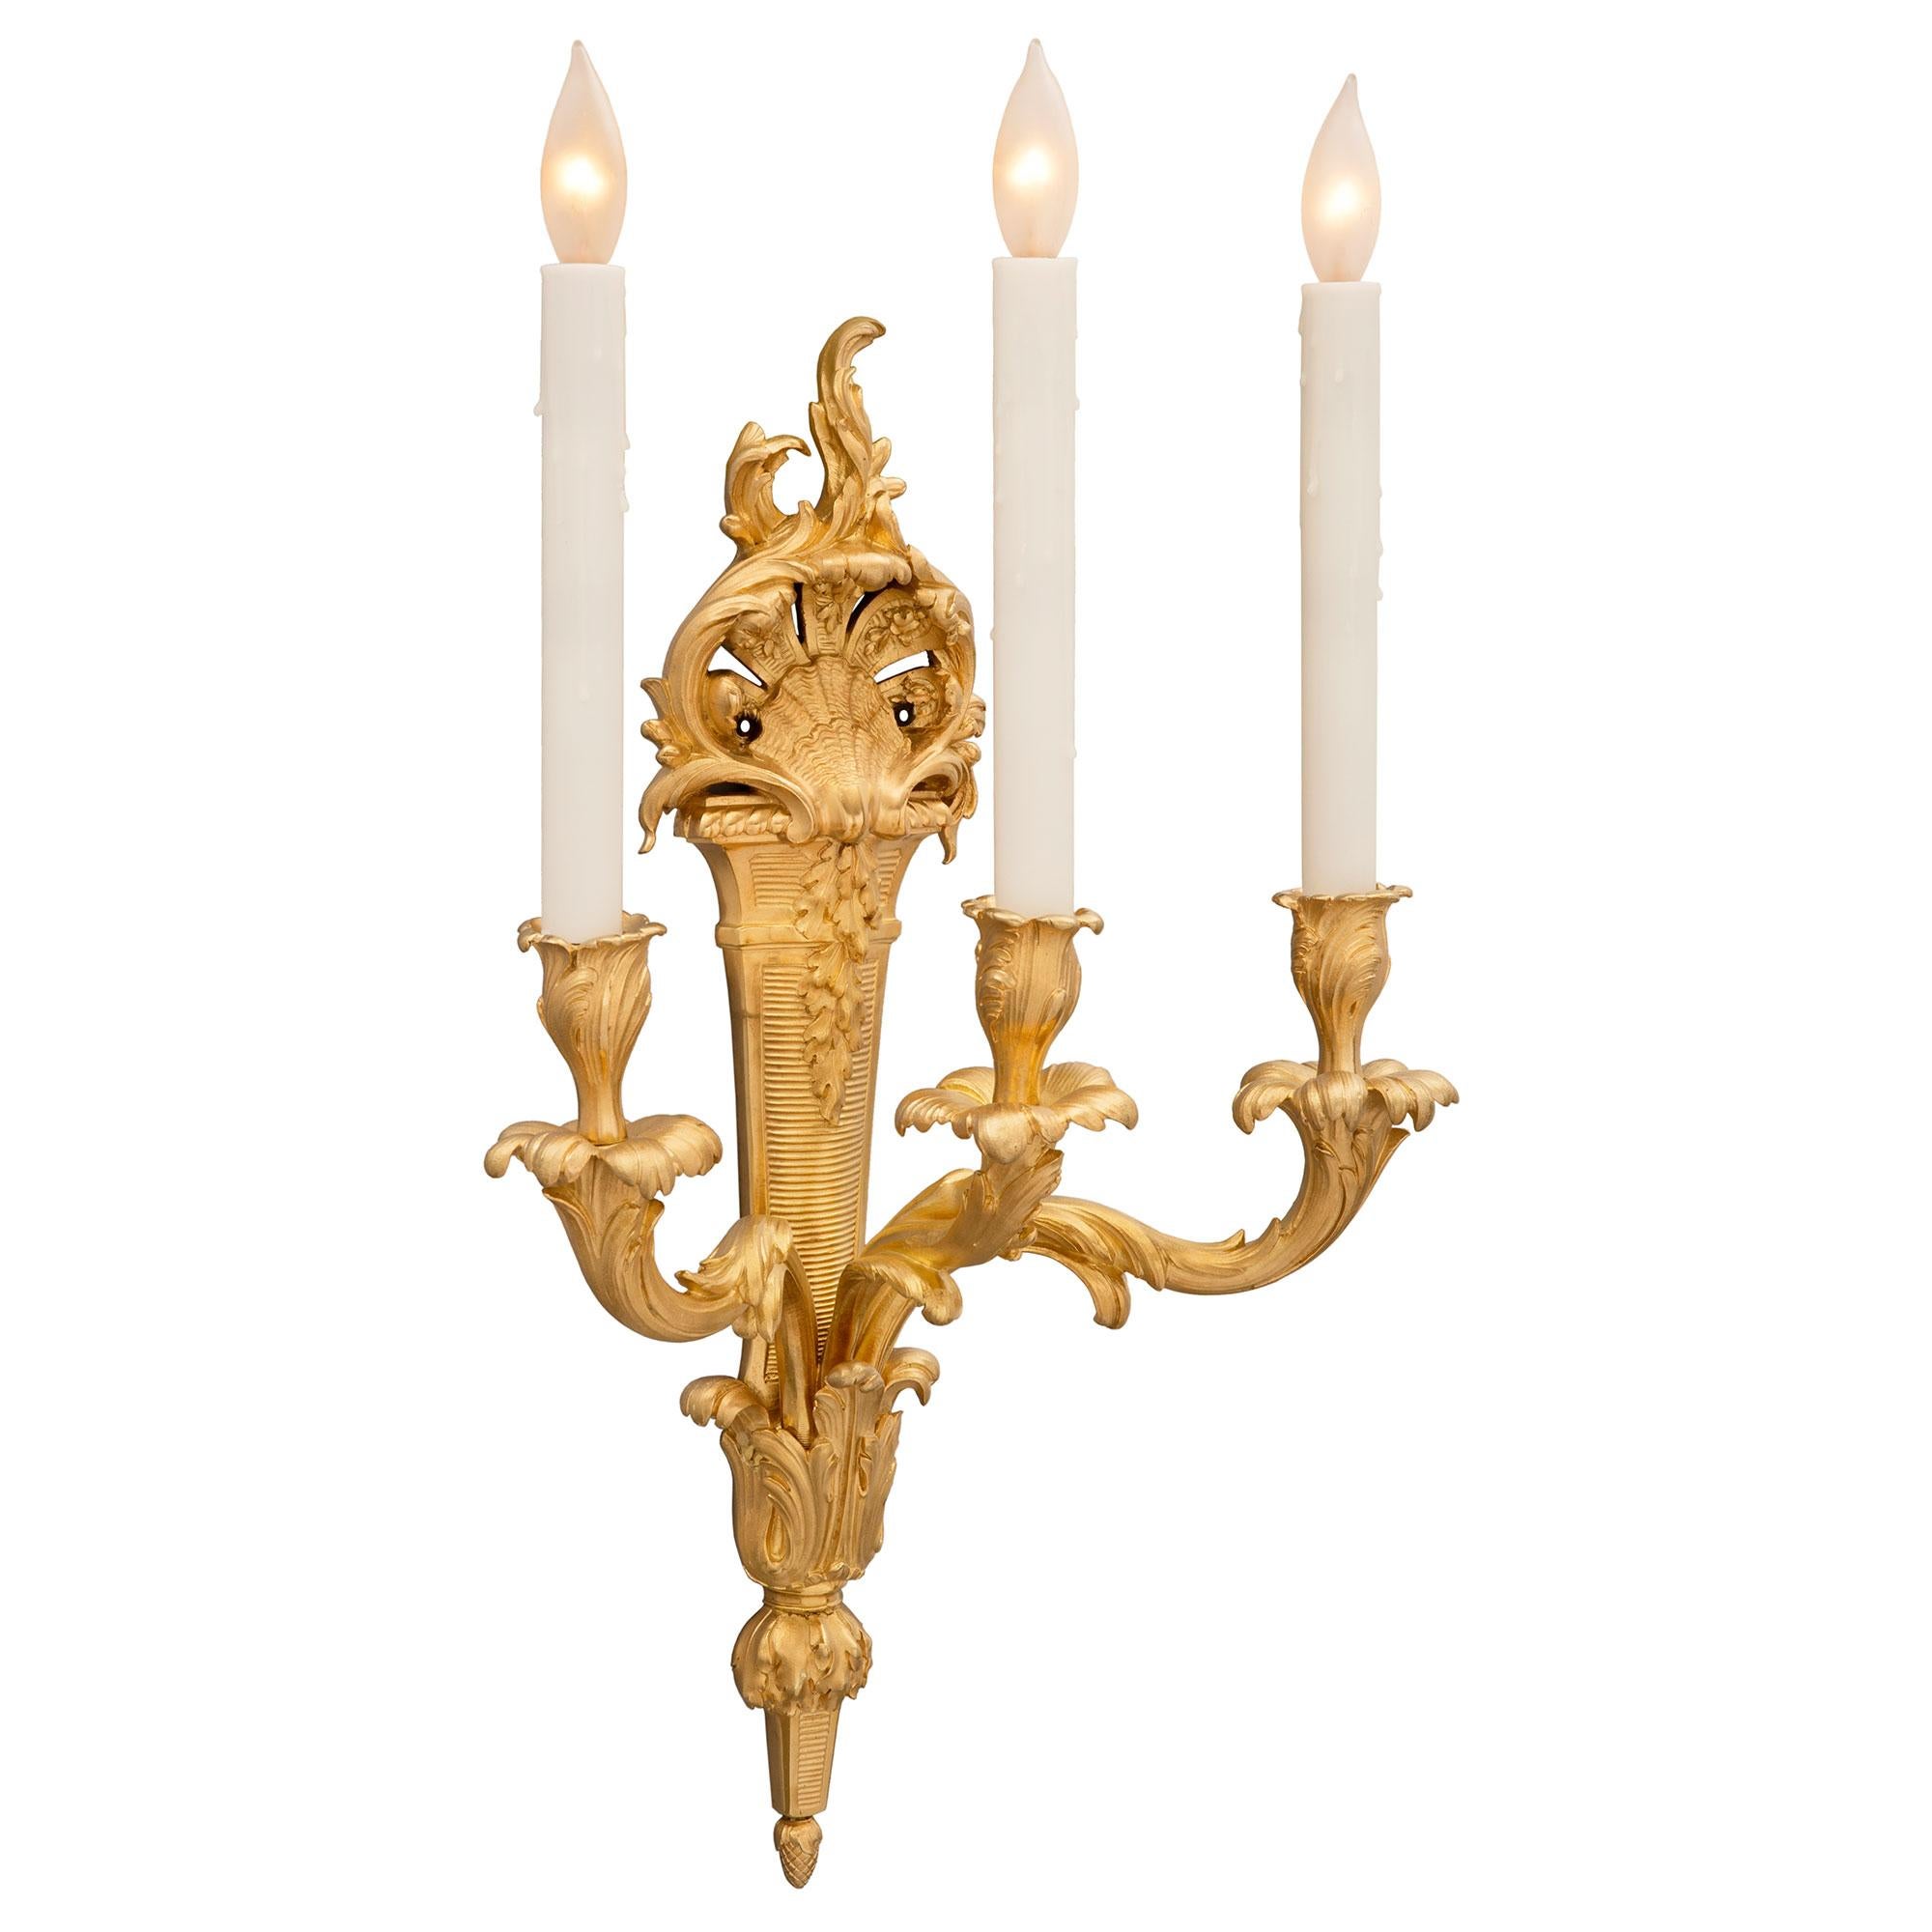 Ein elegantes und sehr dekoratives Paar französischer Ormolu-Leuchter aus dem 19. Jahrhundert im Stil Louis XV. Jede dreiarmige Leuchte wird von einem feinen unteren eichelförmigen Endstück unter auffallend reich ziselierten großen Akanthusblättern